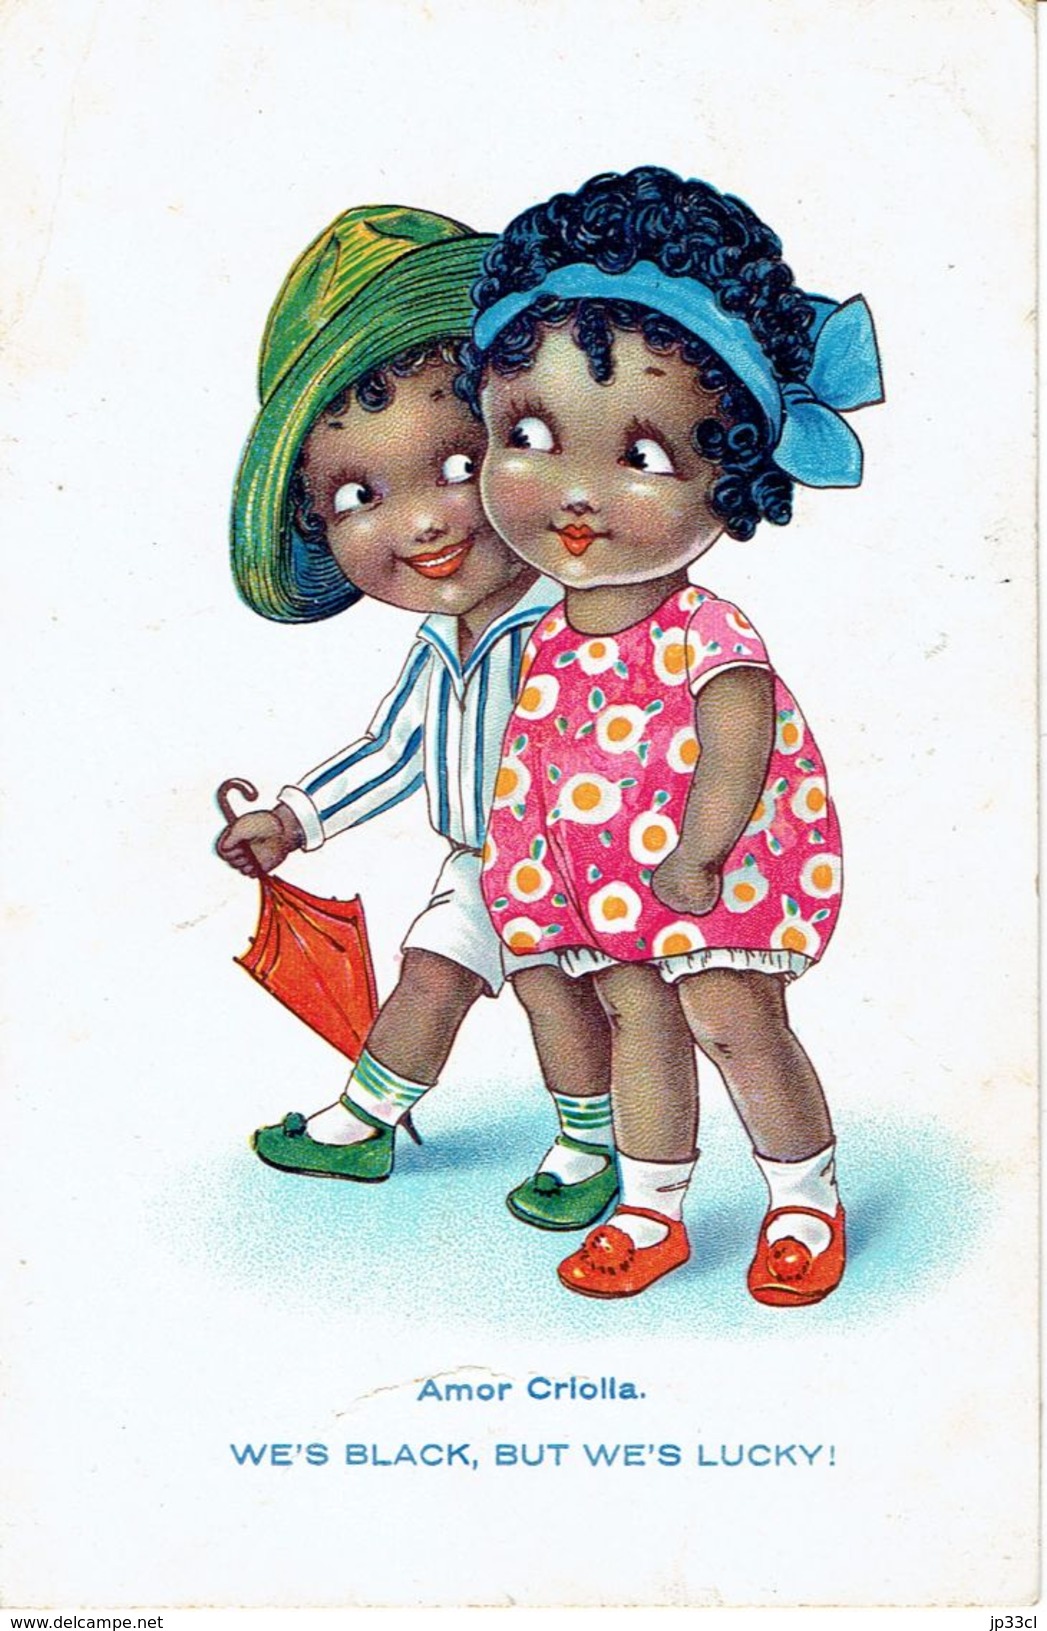 Racisme ? CPA A Connotation Raciste "Amor Criolla We's Black, But We's Lucky" ( 22/8/1935) Tout Est Dans Le "but" - Amérique